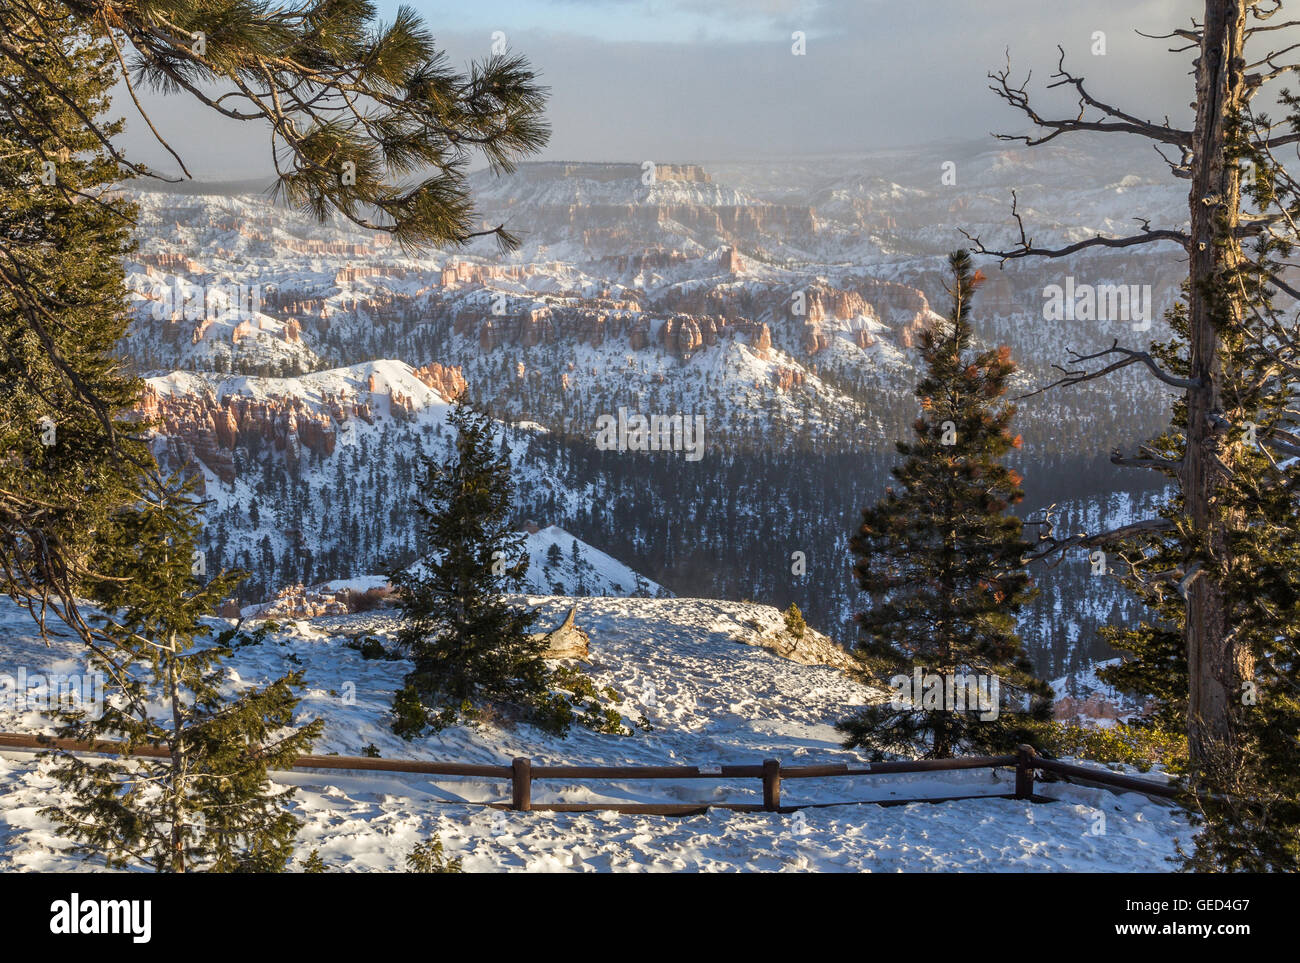 Un árbol de coníferas marcos view de nieve-crusted Bryce Canyon hoodoos al amanecer Foto de stock